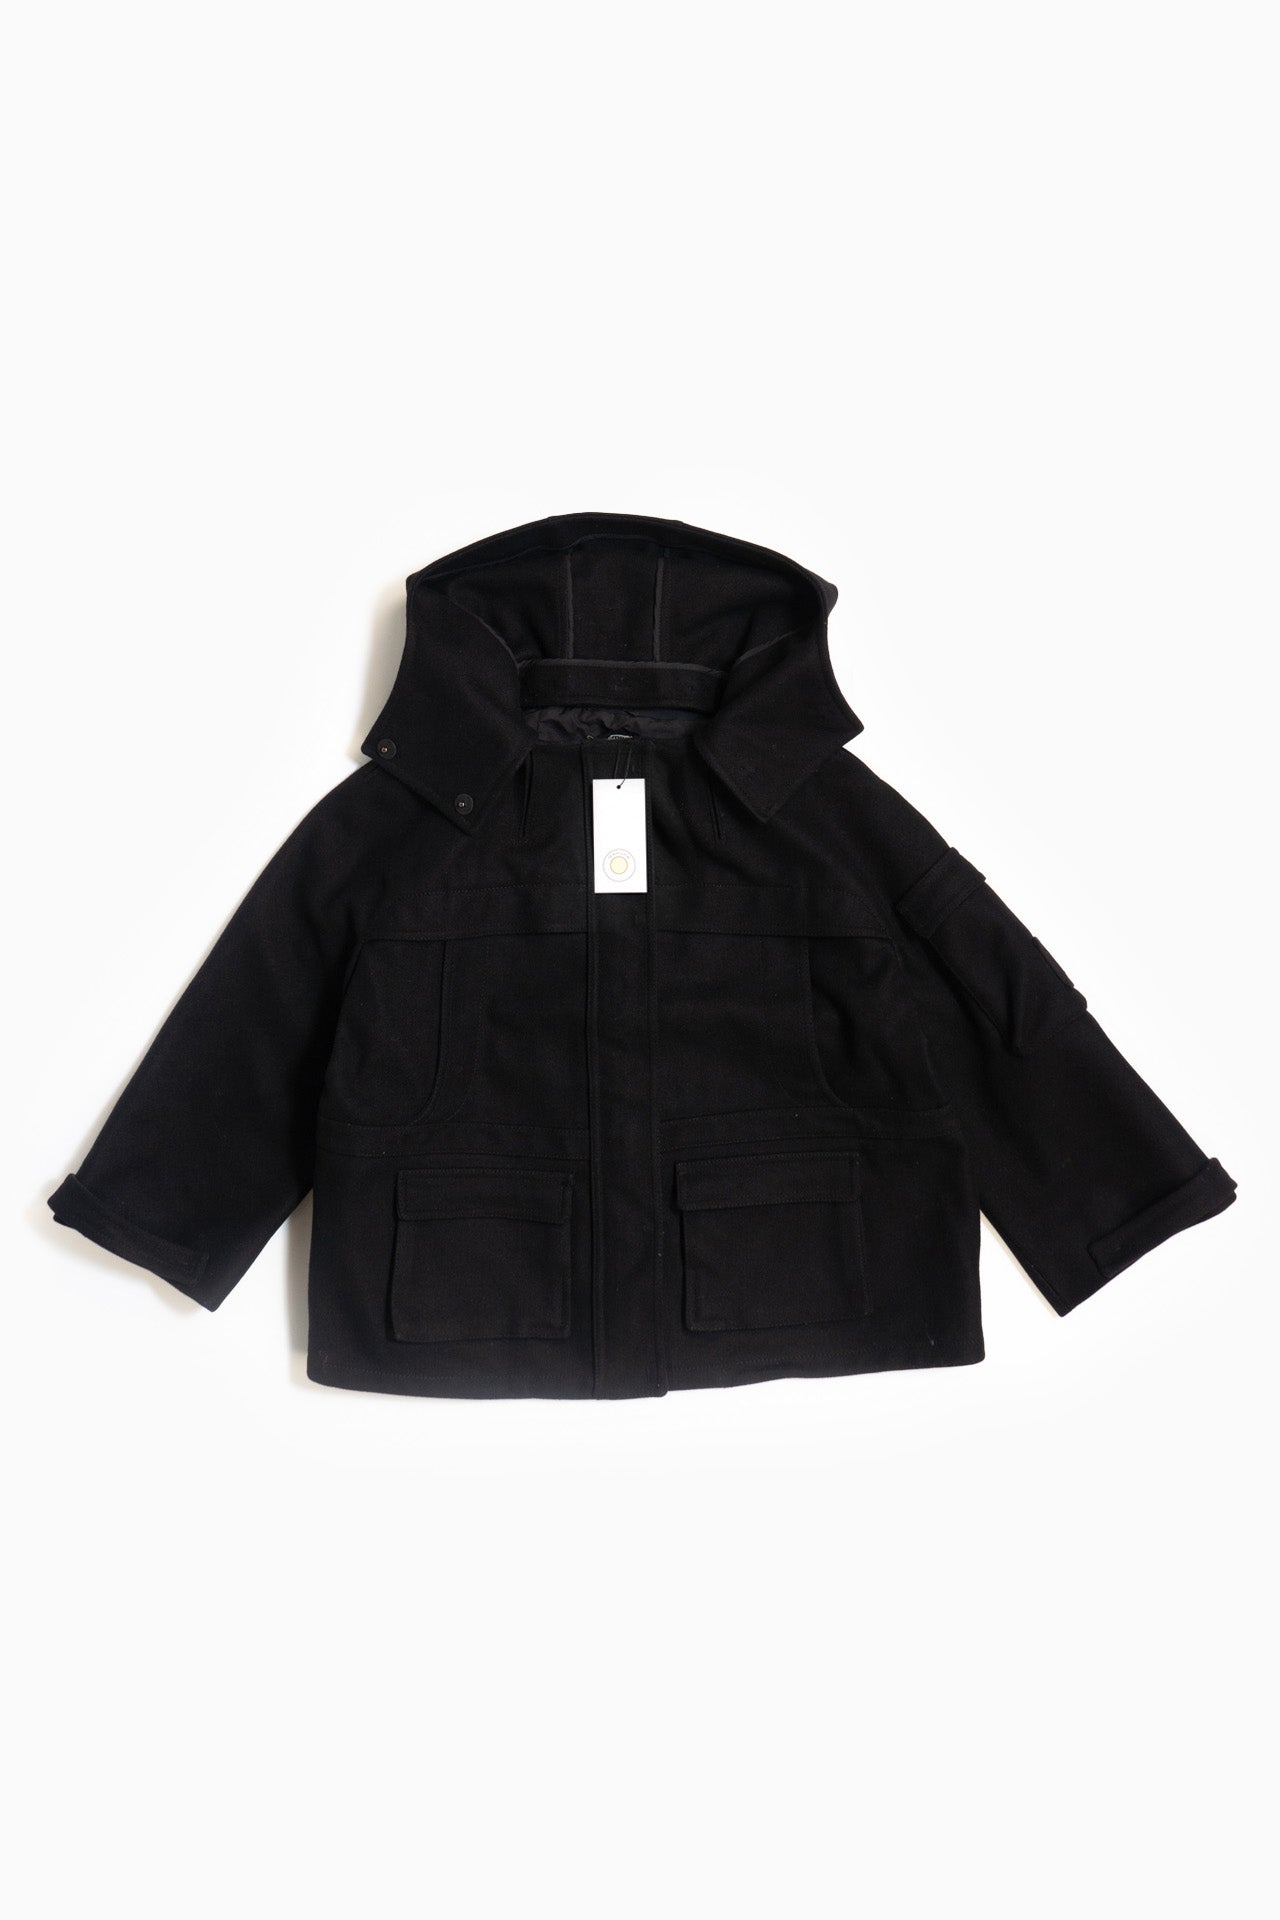 Miu Miu Black Wool Coat